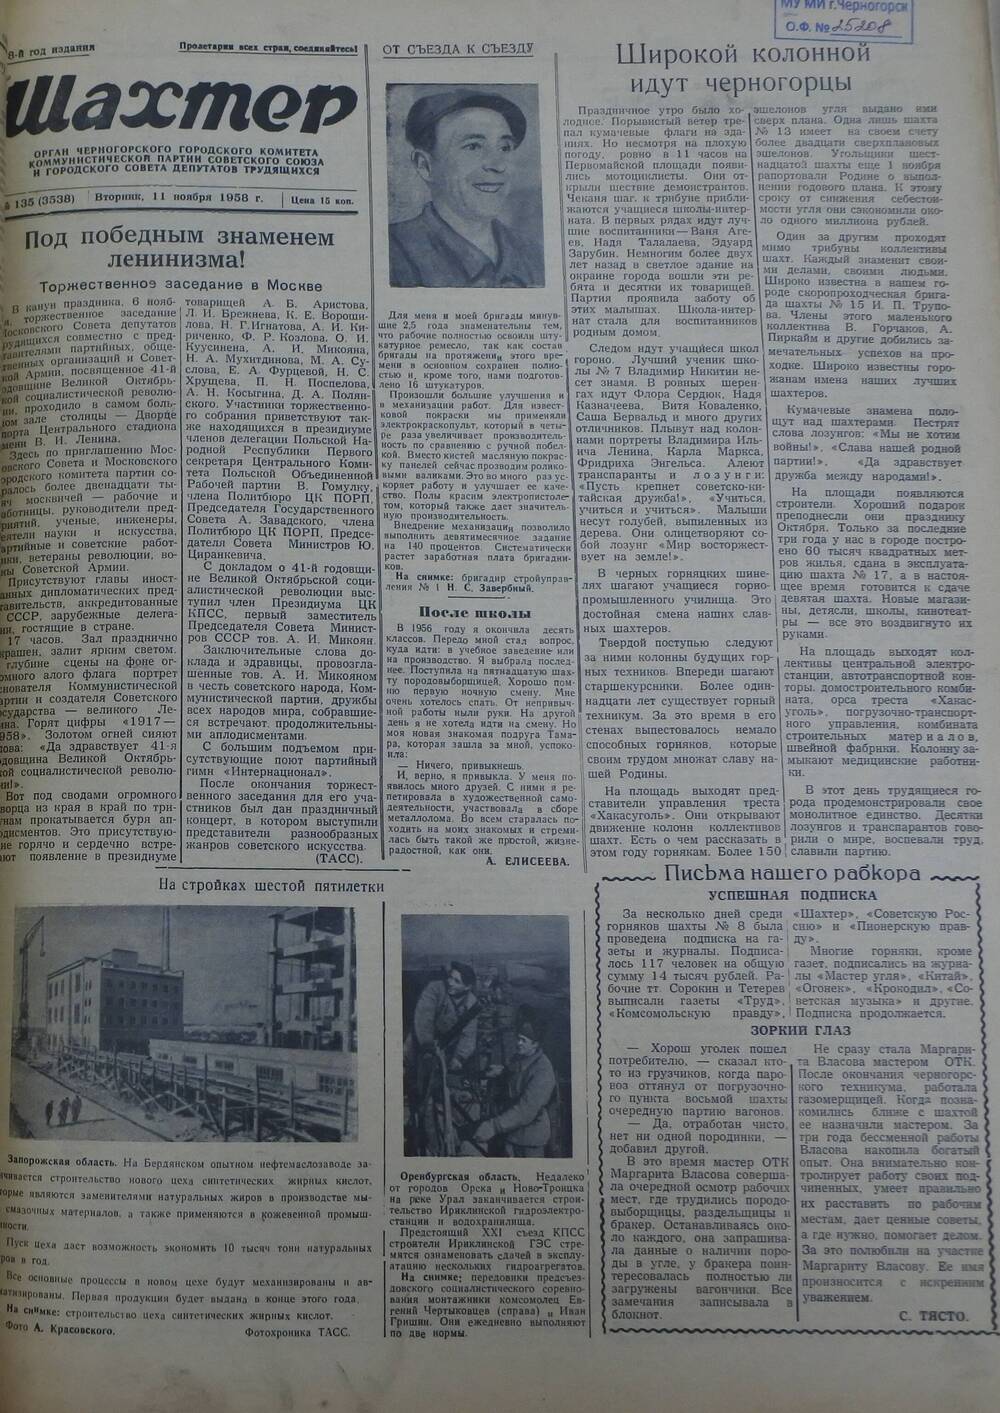 Газета «Шахтер». Выпуск № 135 от 11.11.1958 г.